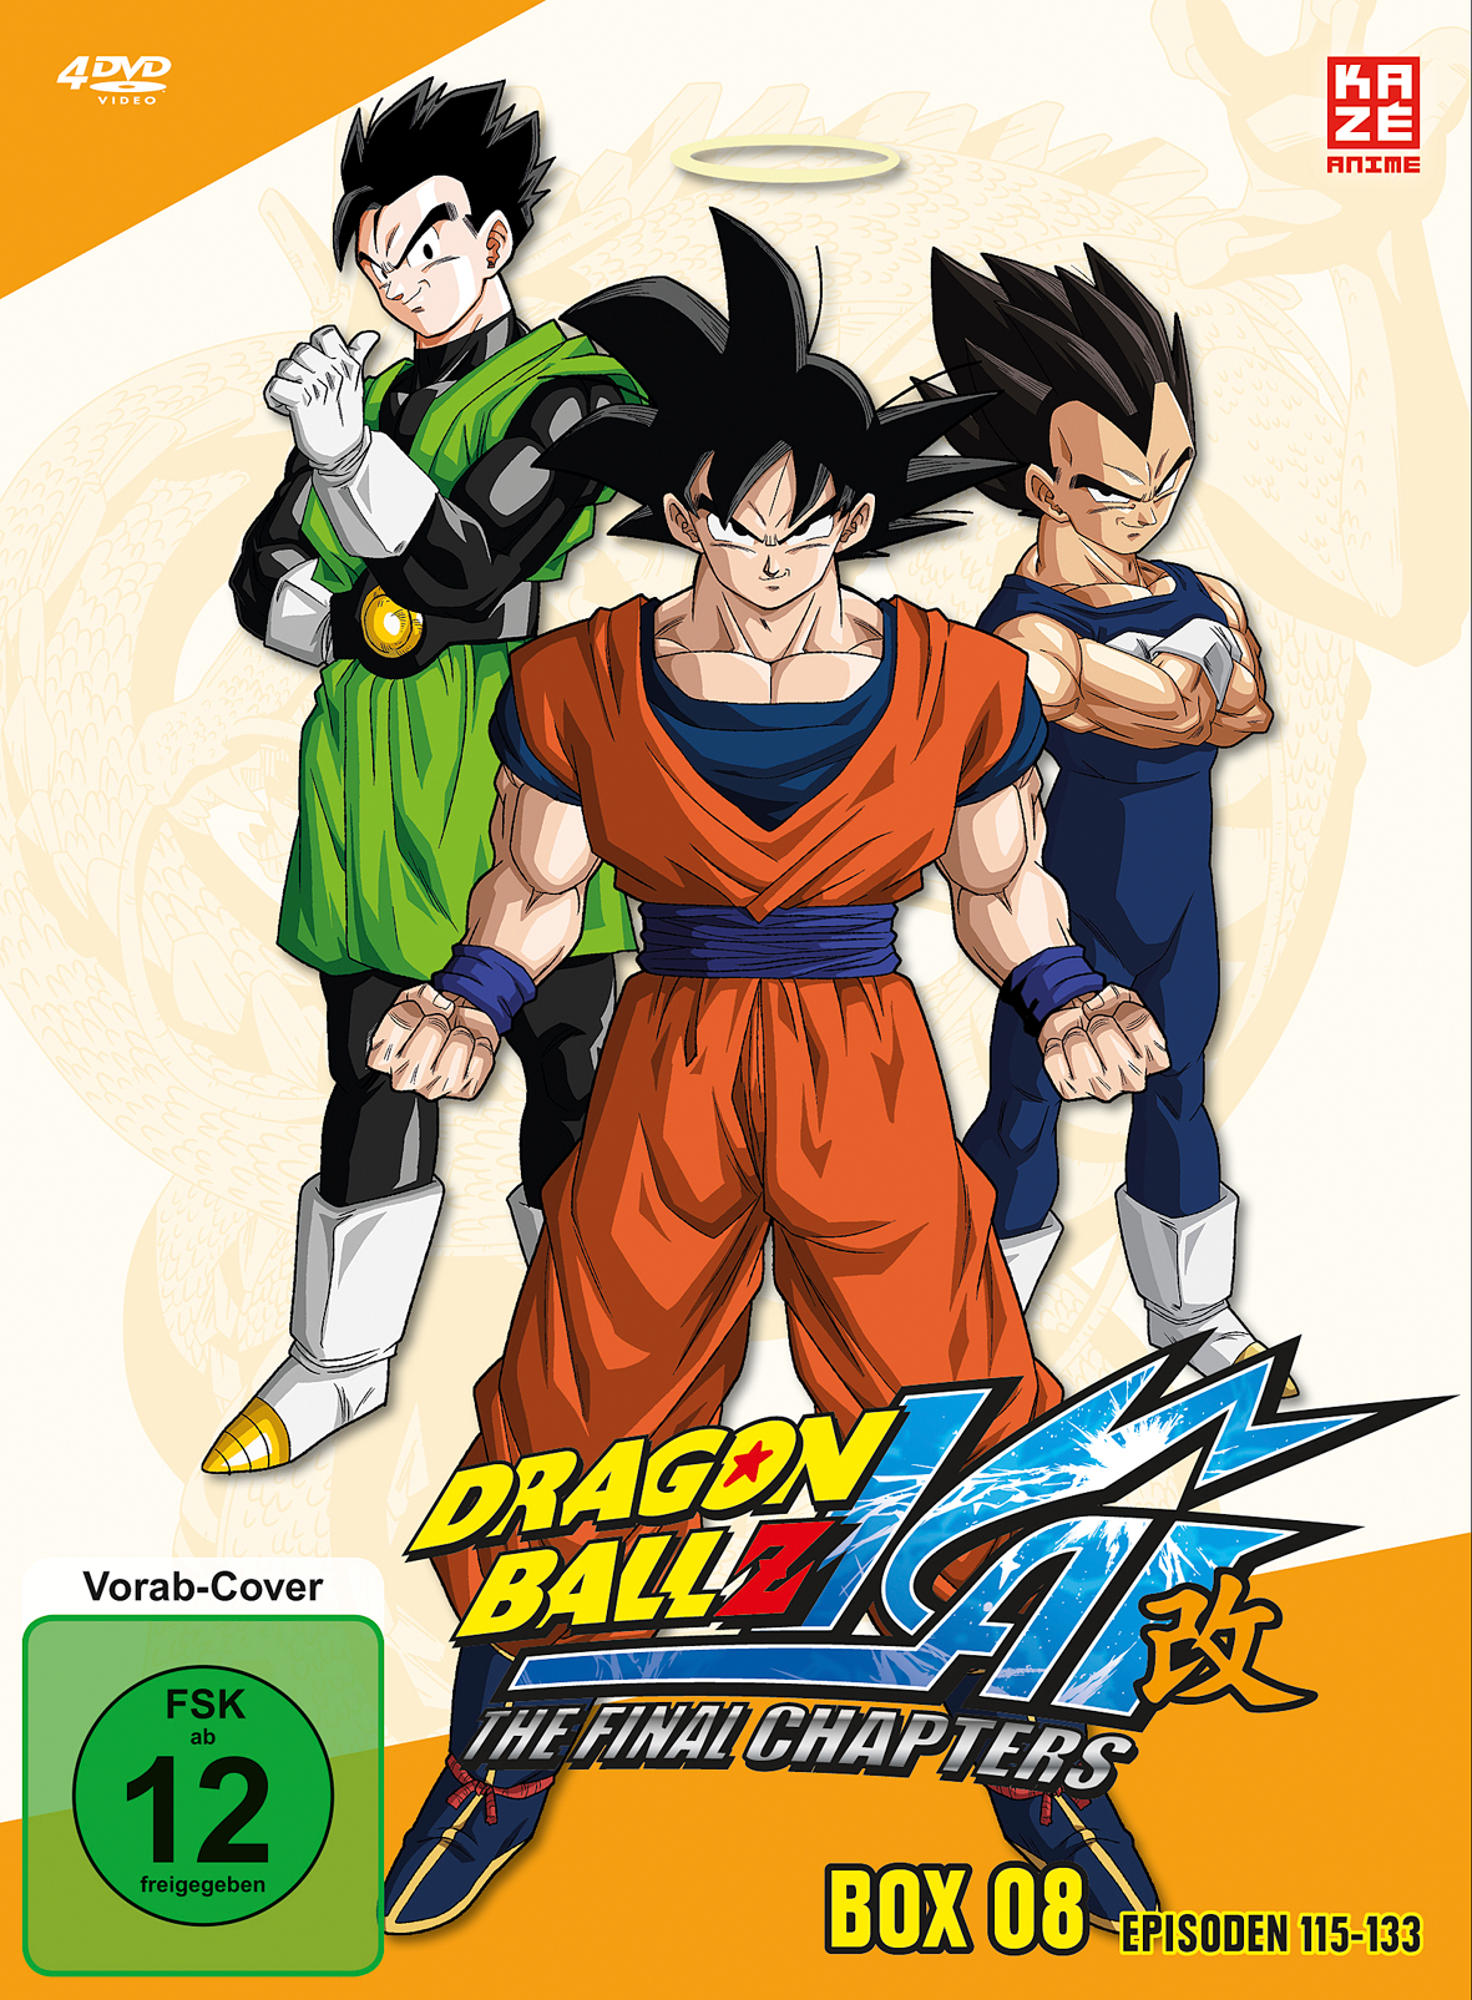 DVD 8 Episoden 117-133 Kai - Z Box Dragonball DVD -